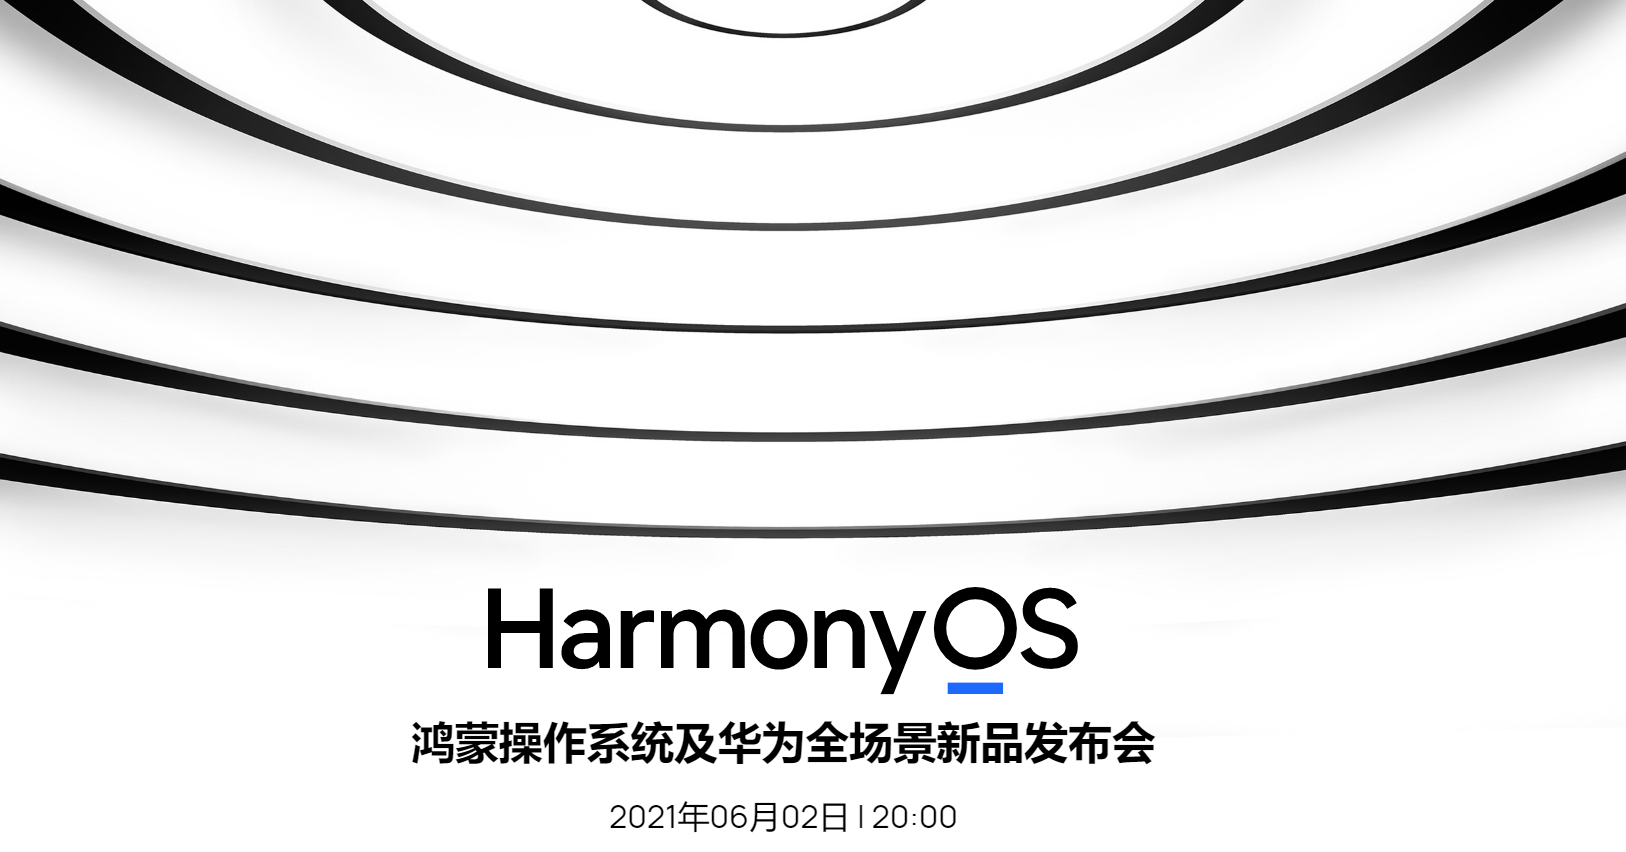 华为将发布全景场的智能操作系统鸿蒙HarmonyOS 谷歌更着争